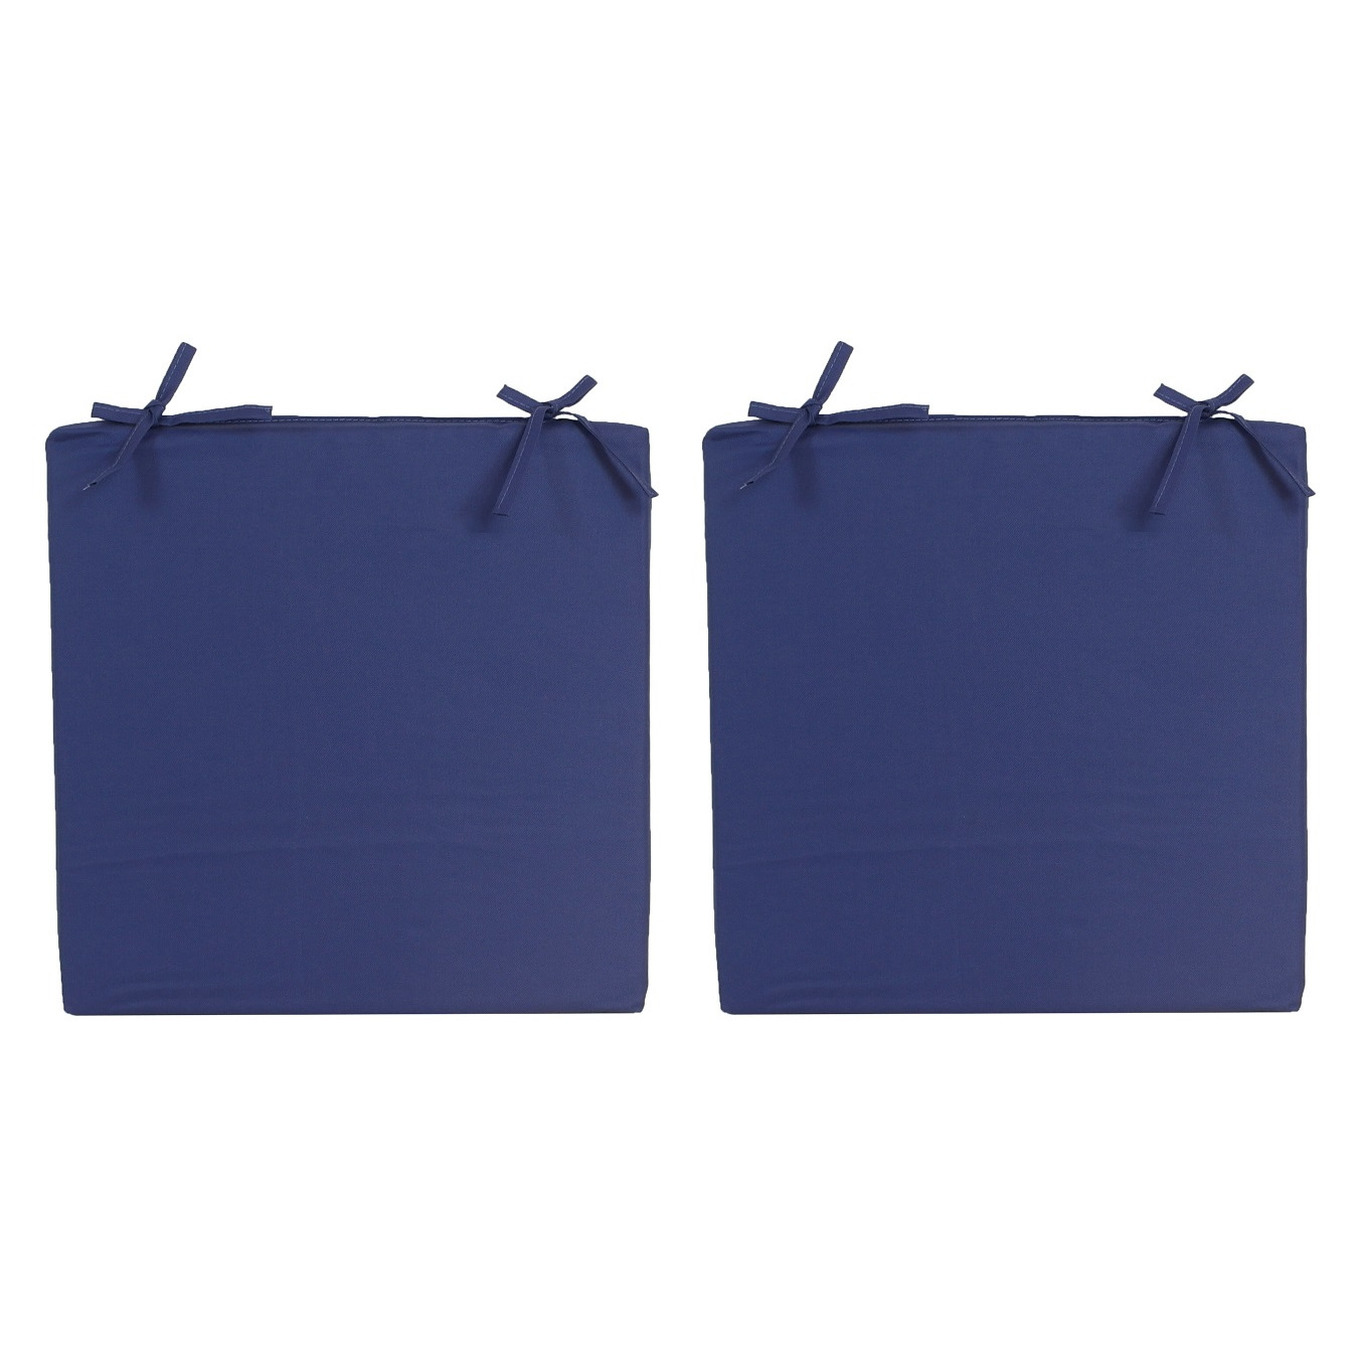 8x stuks stoelkussens voor binnen en buiten in de kleur donkerblauw 40 x 40 cm